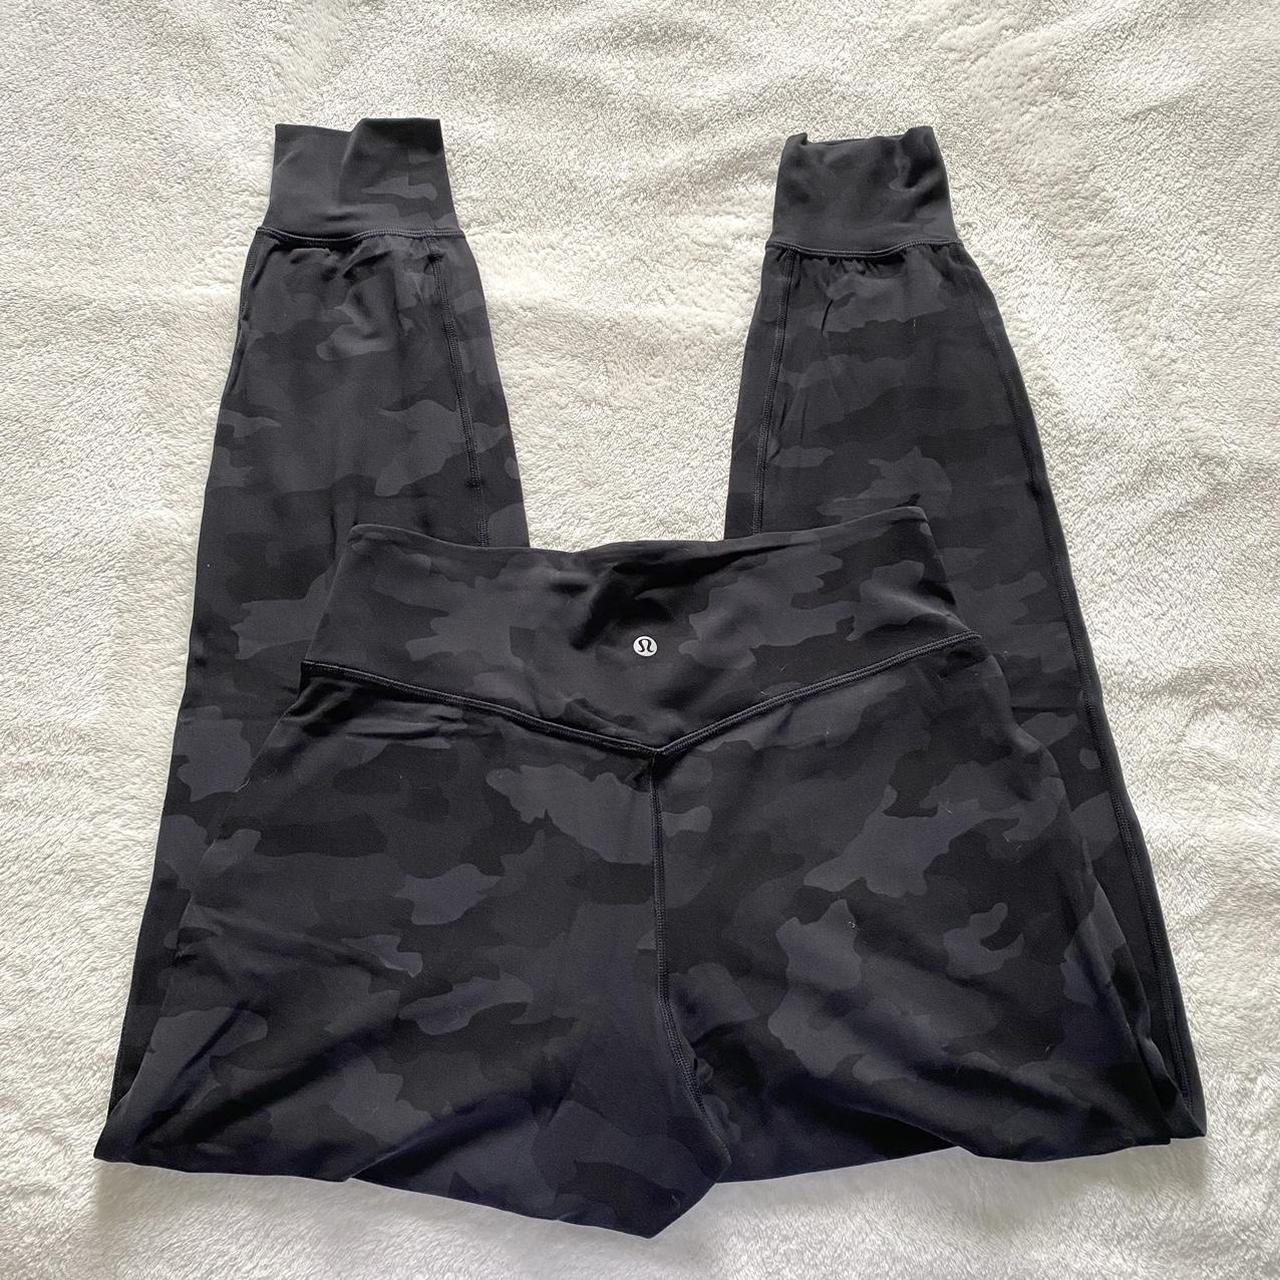 lululemon Align high waisted black camo leggings